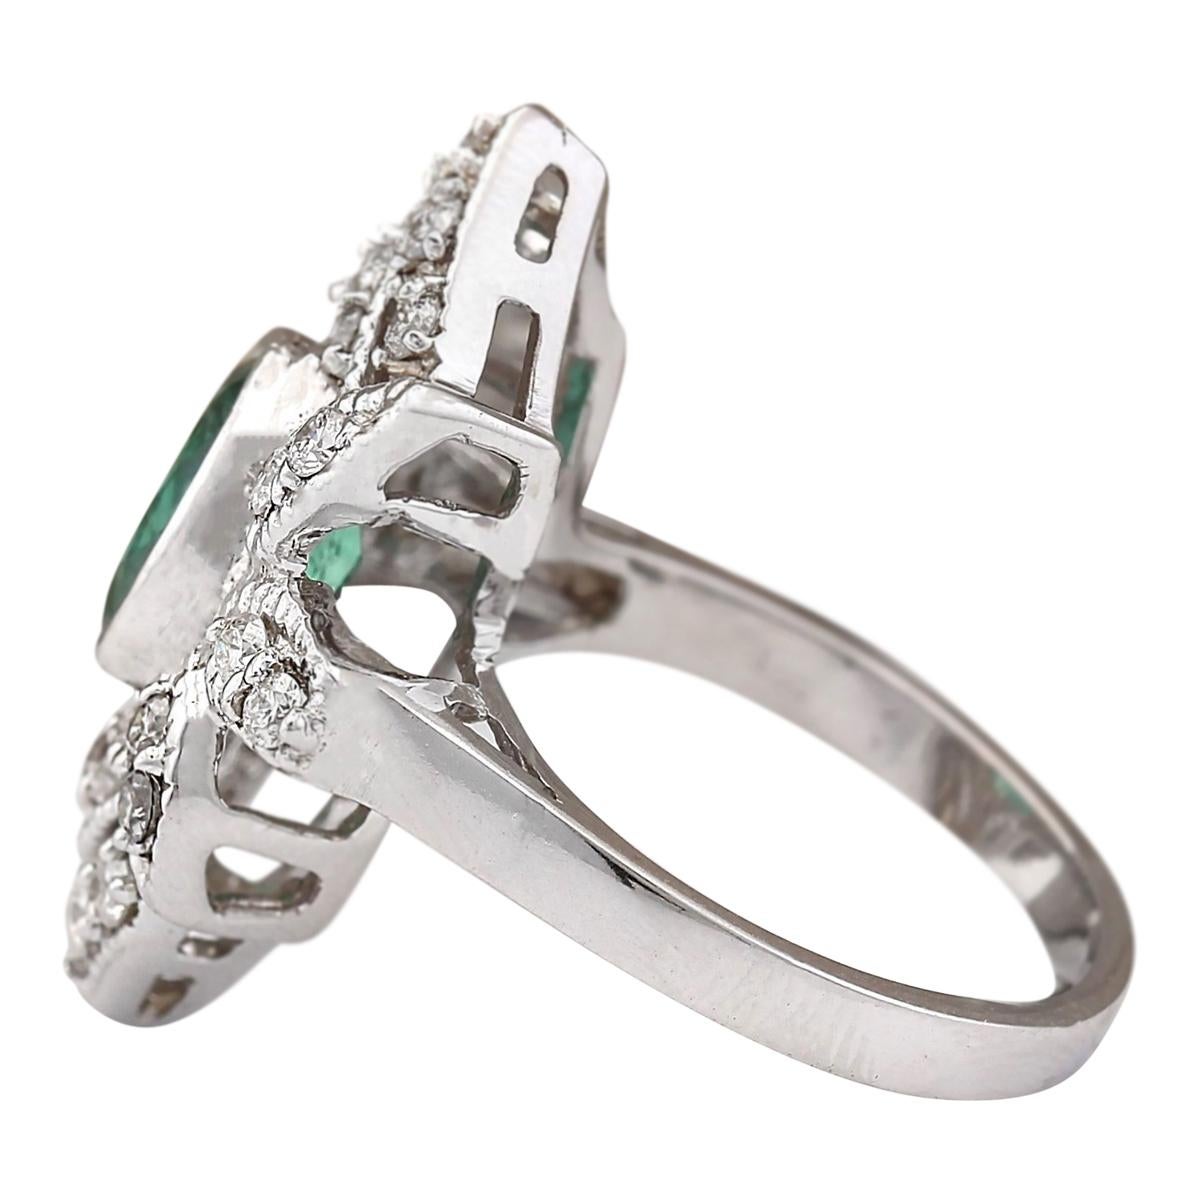 2.50 Carat Natural Emerald 14 Karat White Gold Diamond Ring
Stamped: 14K White Gold
Total Ring Weight: 7.5 Grams
Total Natural Emerald Weight is 1.80 Carat (Measures: 9.00x7.00 mm)
Color: Green
Total Natural Diamond Weight is 0.70 Carat
Color: F-G,